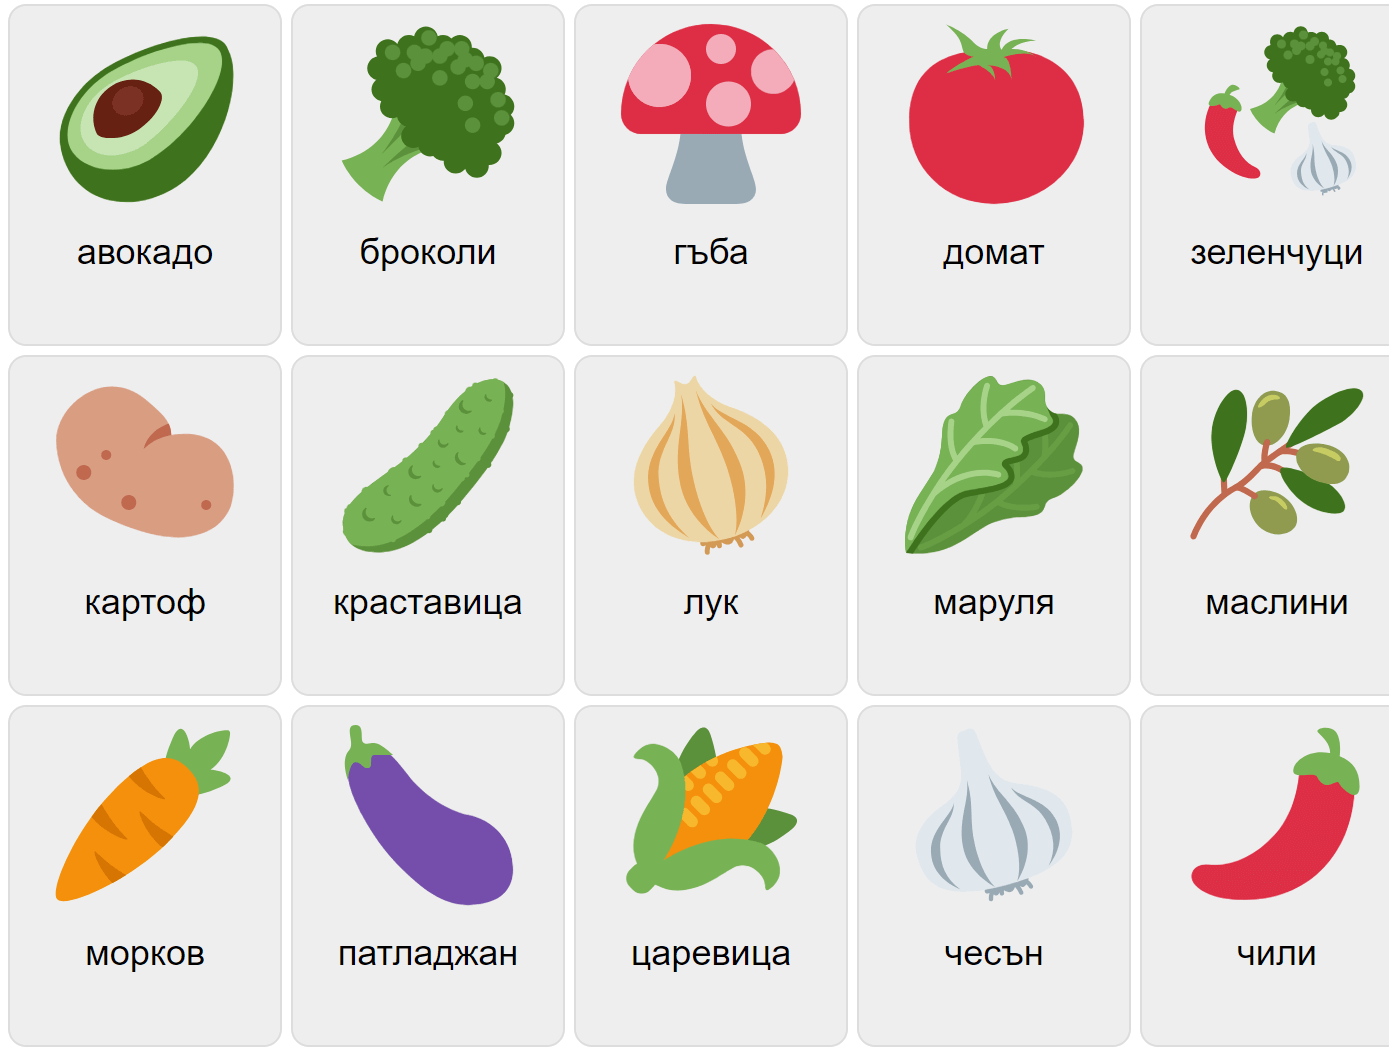 Grönsaker på bulgariska